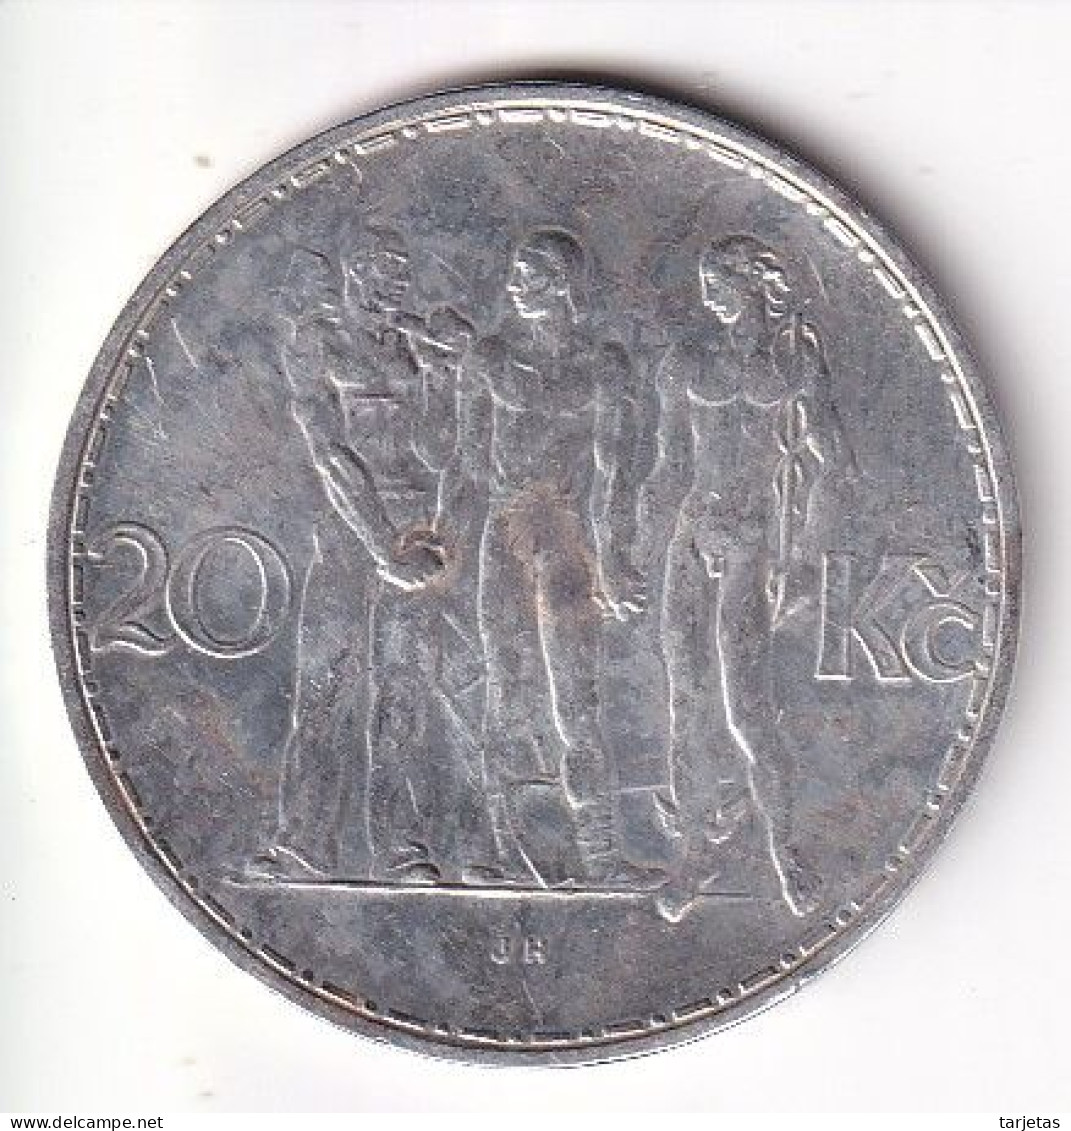 MONEDA DE PLATA DE CHECOSLOVAQUIA DE 20 KORUN DEL AÑO 1933 (COIN) SILVER-ARGENT - Cecoslovacchia